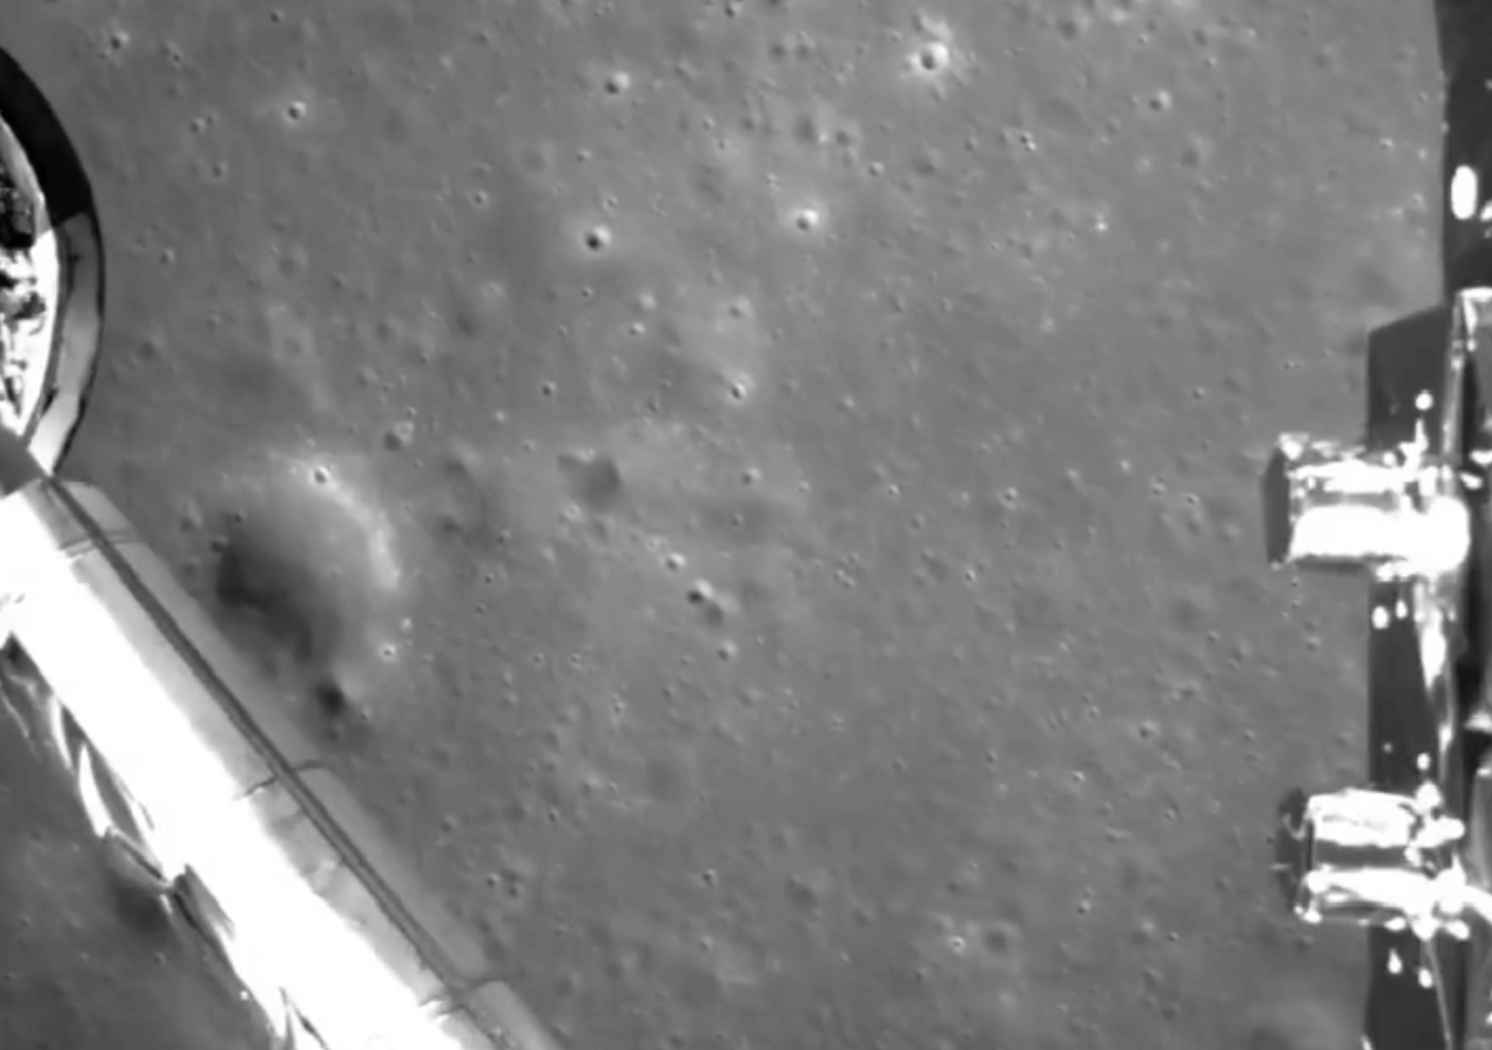 #видео дня: Посадка китайского модуля на обратную сторону Луны